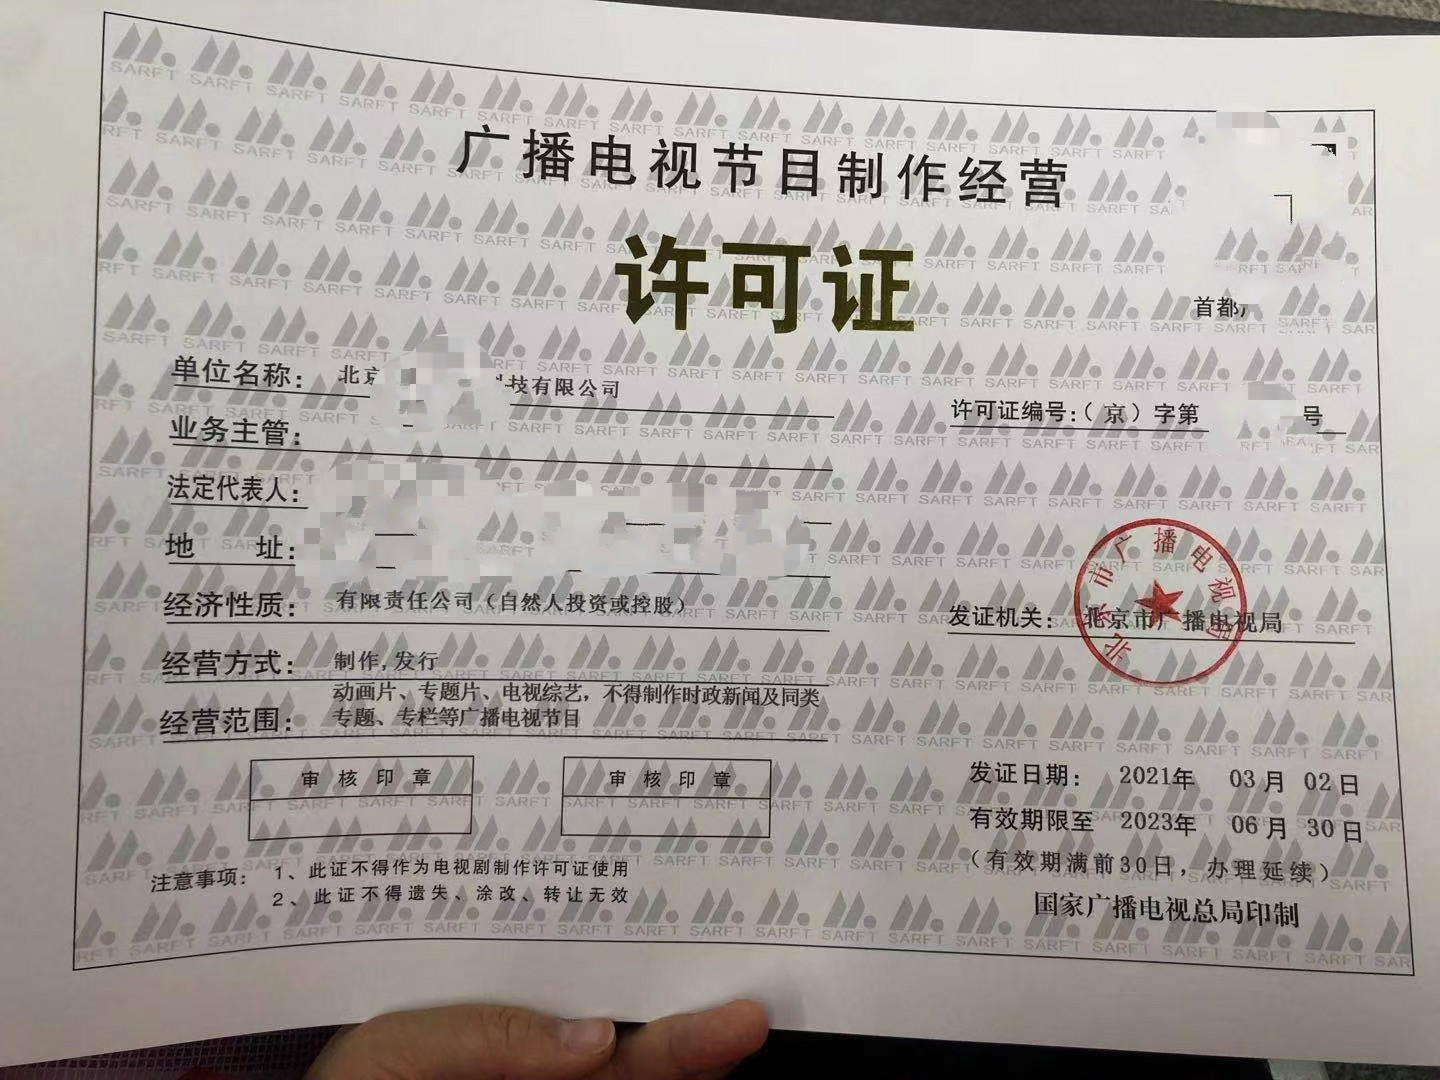 应用业务范围北京市广播电视节目制作经营许可证申请